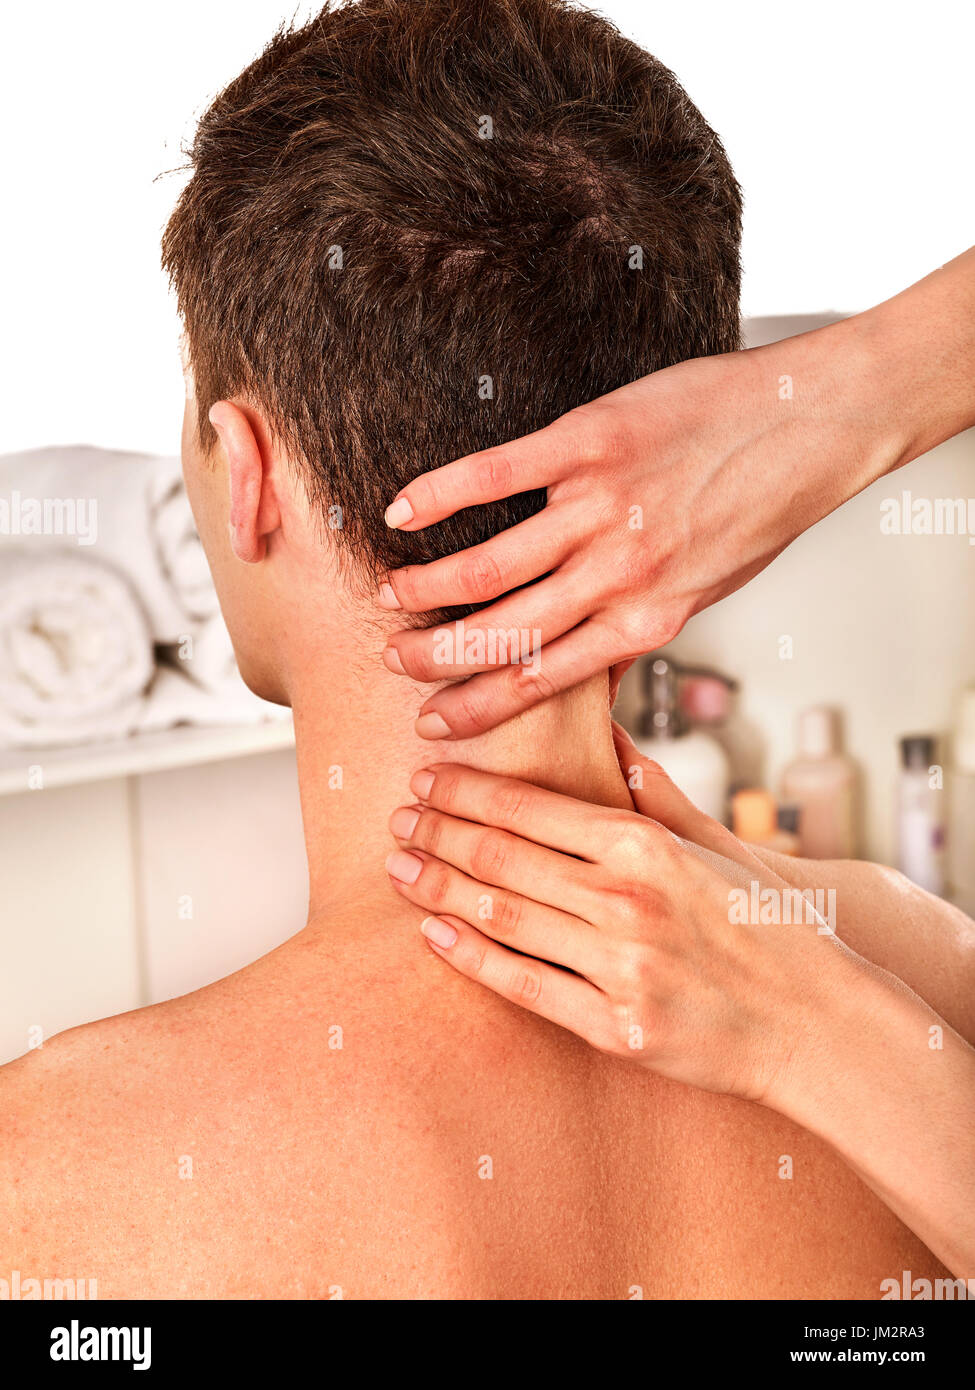 https://c8.alamy.com/comp/JM2RA3/shoulder-and-neck-massage-for-man-in-spa-salon-JM2RA3.jpg